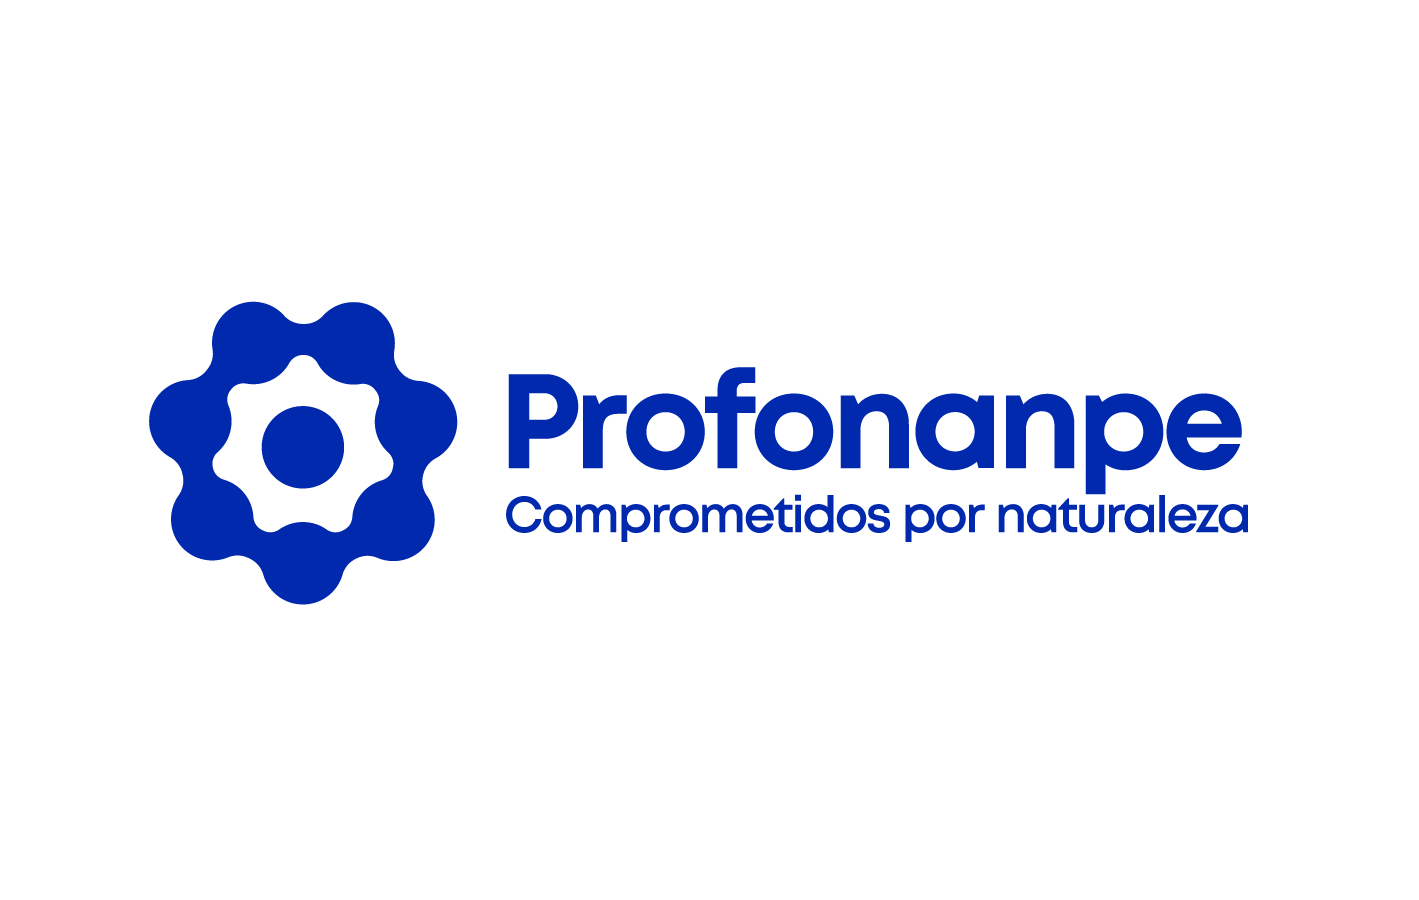 Logo Profonanpe 2020 Final_Mesa de trabajo 1 (1)